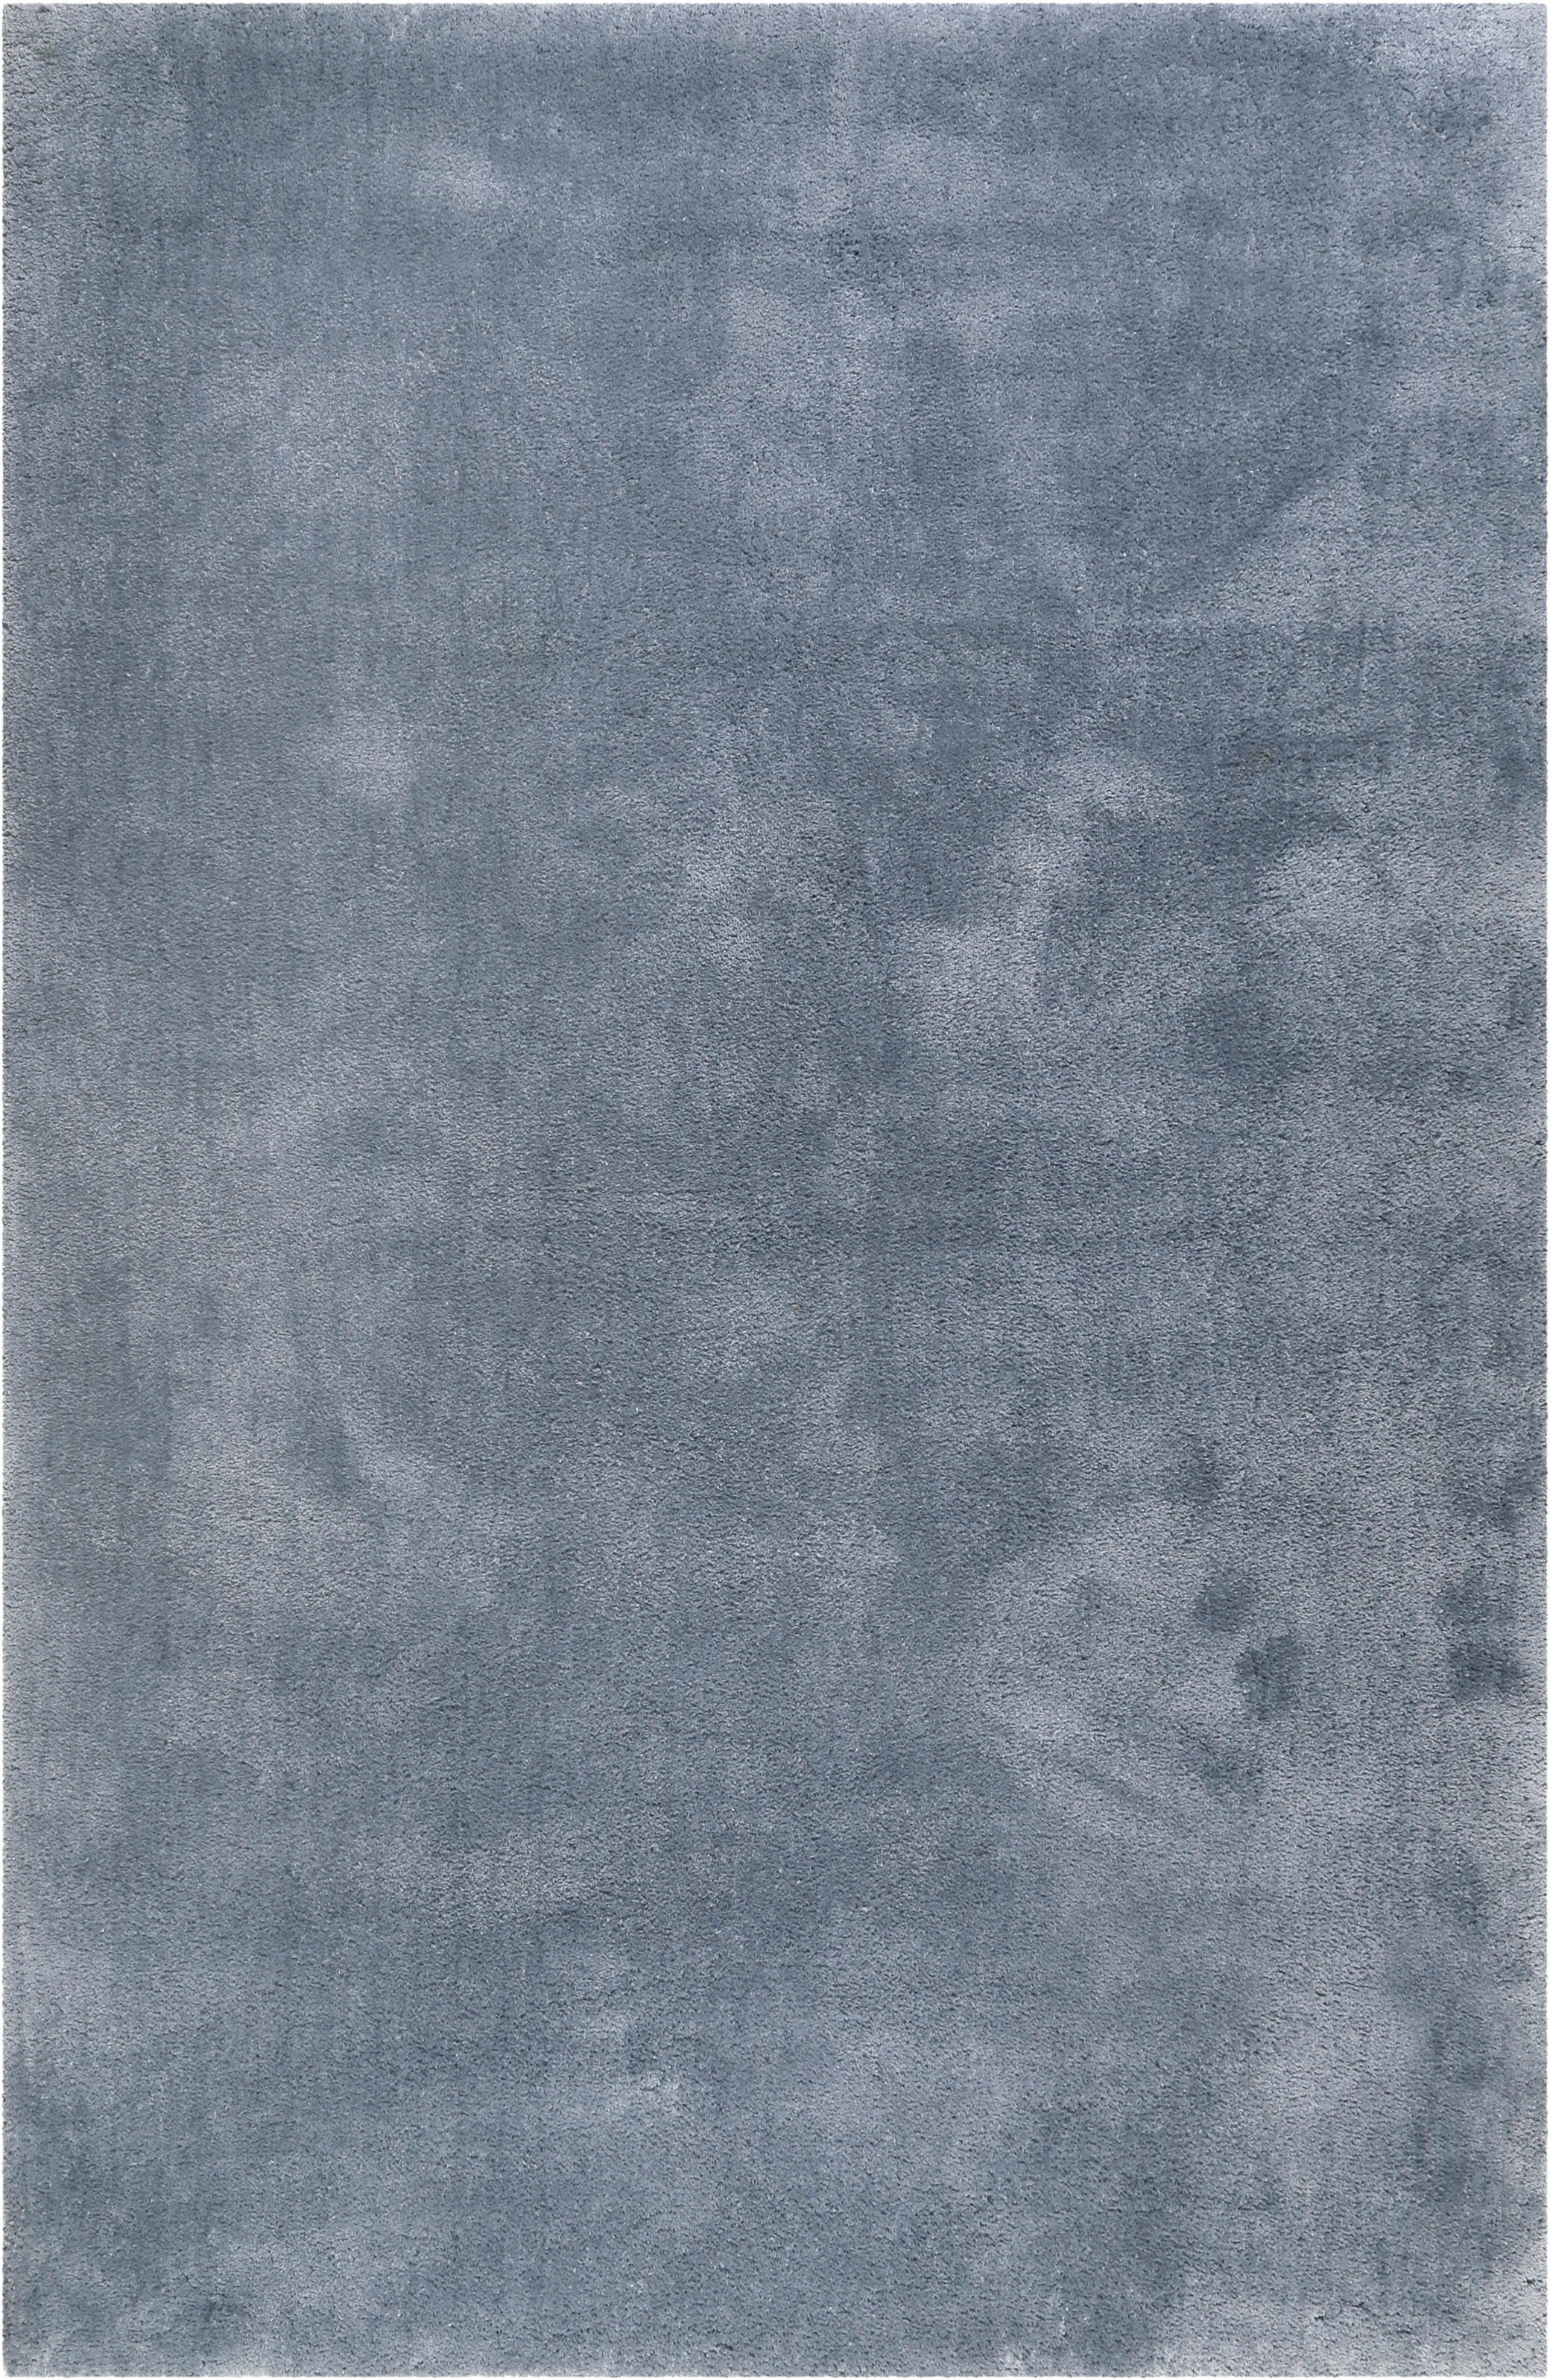 Esprit KOBEREC S VYSOKÝM VLASEM, 70/140 cm, modrá, šedá - modrá,šedá - textil